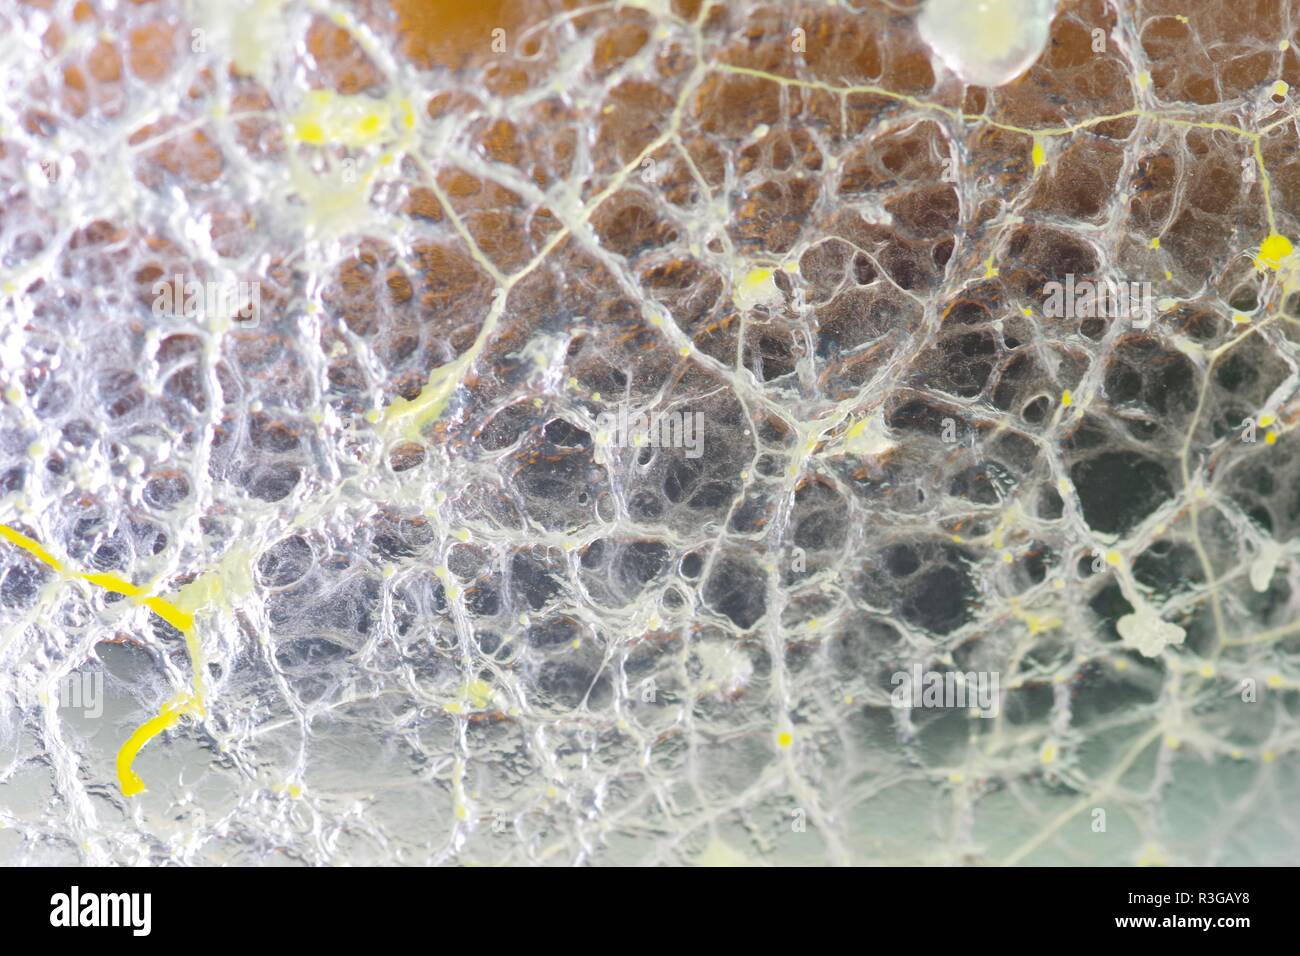 Myxomycète (Sentier jaune Physarum polycephalum) croissant et Réseau formant dans Agar Pétri. Projet de laboratoire de biologie, en Écosse, au Royaume-Uni. Banque D'Images